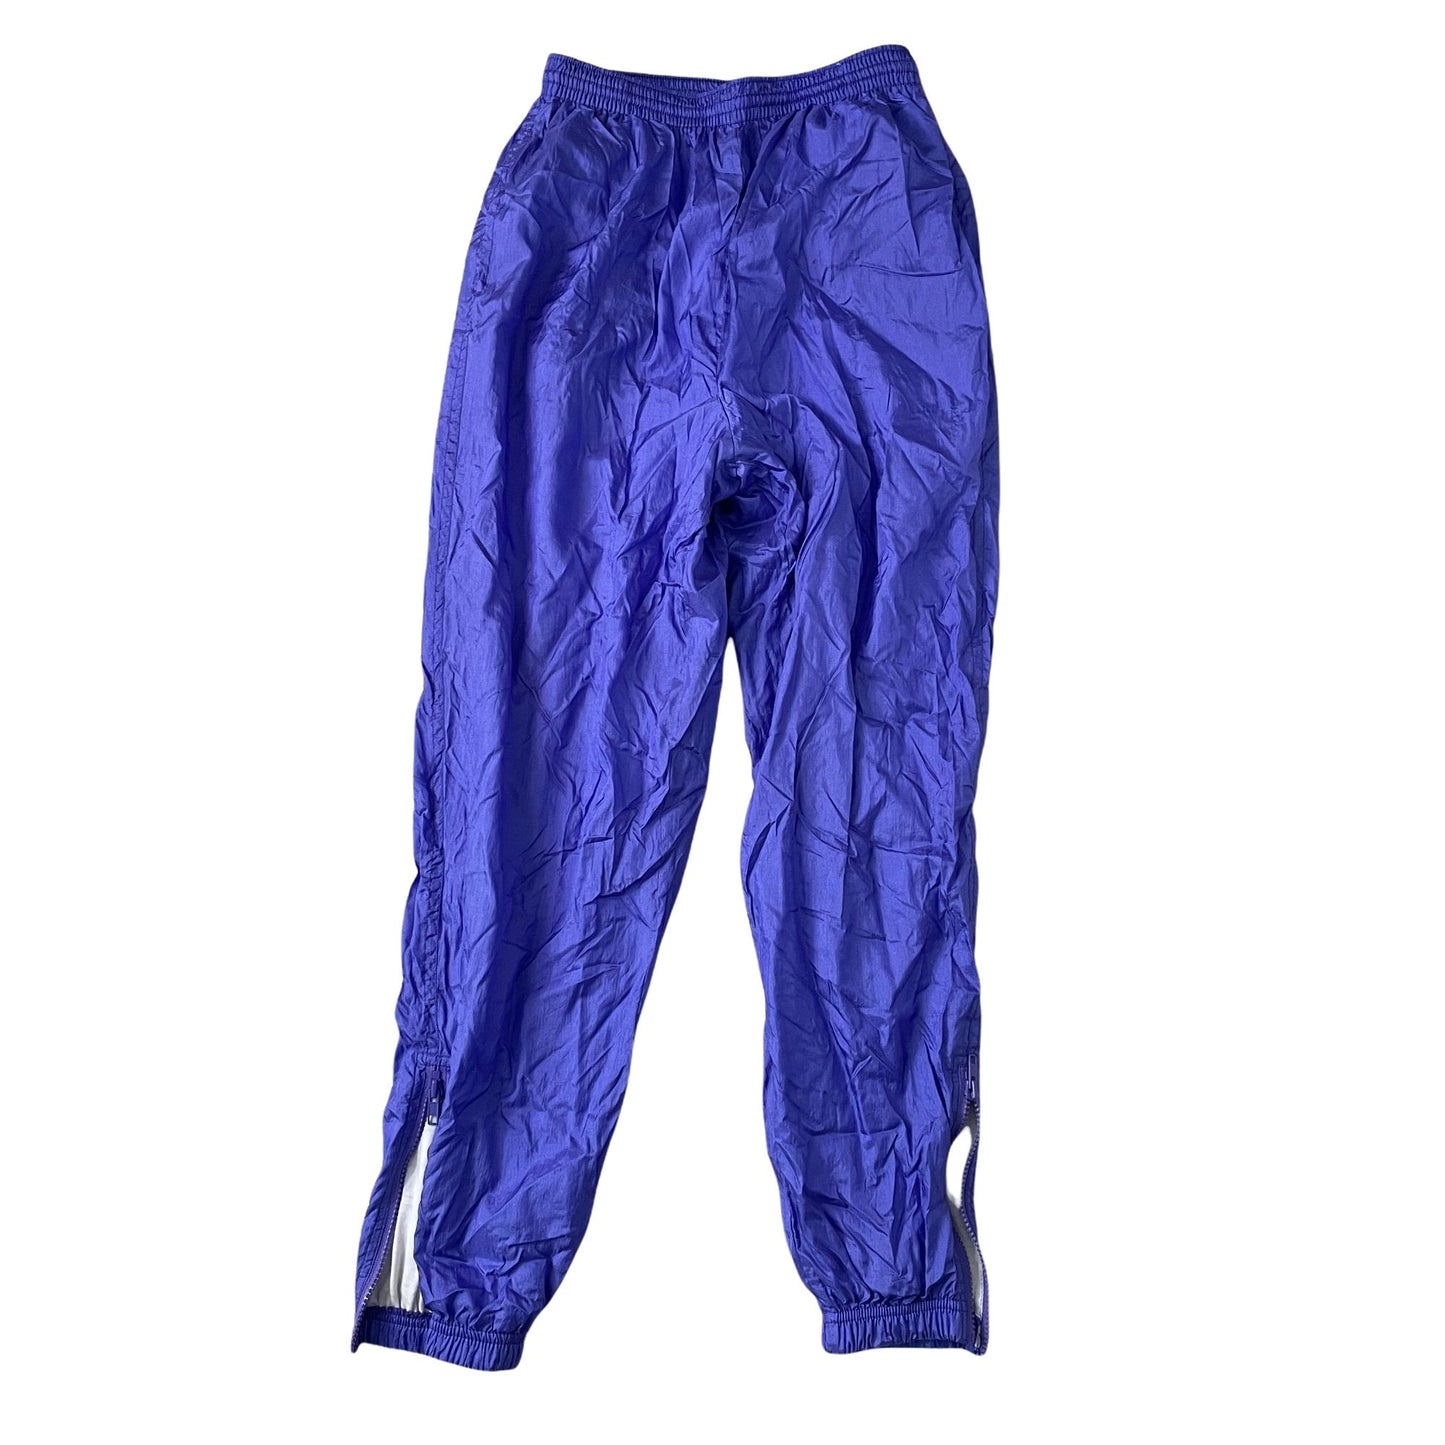 Vintage Purple Track Pants - Medium